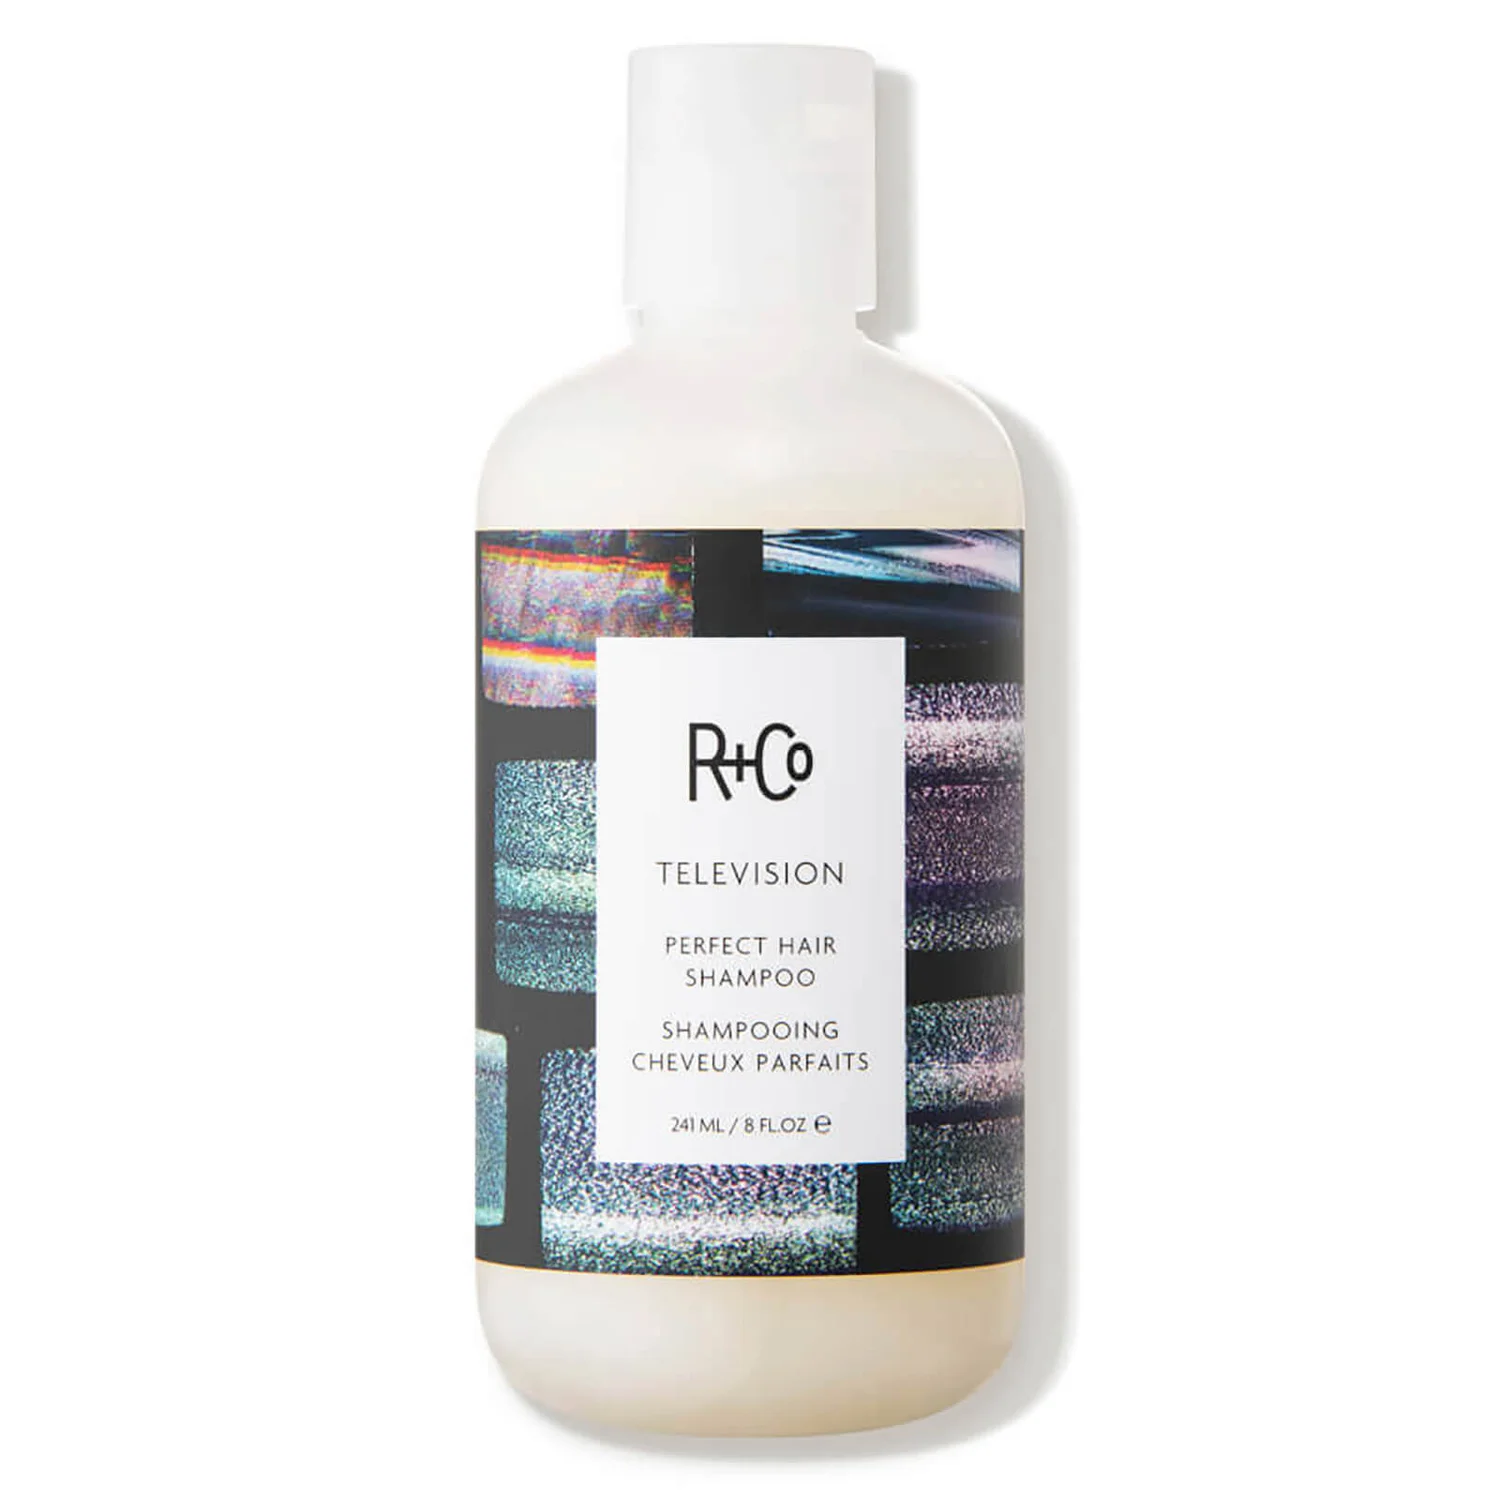 dermstore.com | R+Co TELEVISION Perfect Hair Shampoo (8 fl. oz.)